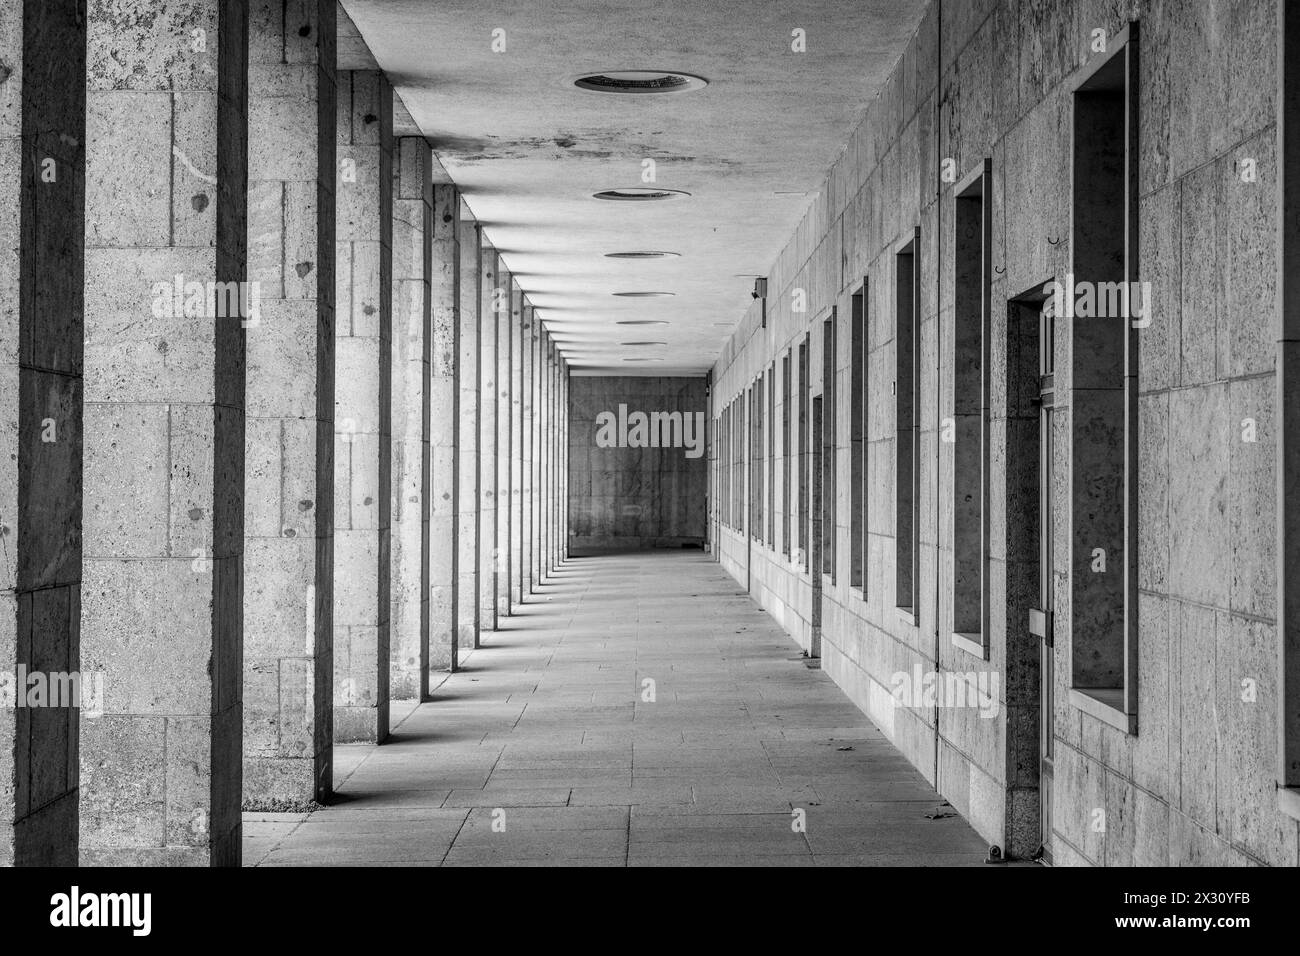 Ein verschwindender Blick auf eine moderne Arkade mit gleichmäßig verteilten Säulen und Deckenleuchten. Schwarzweißbild. Stockfoto